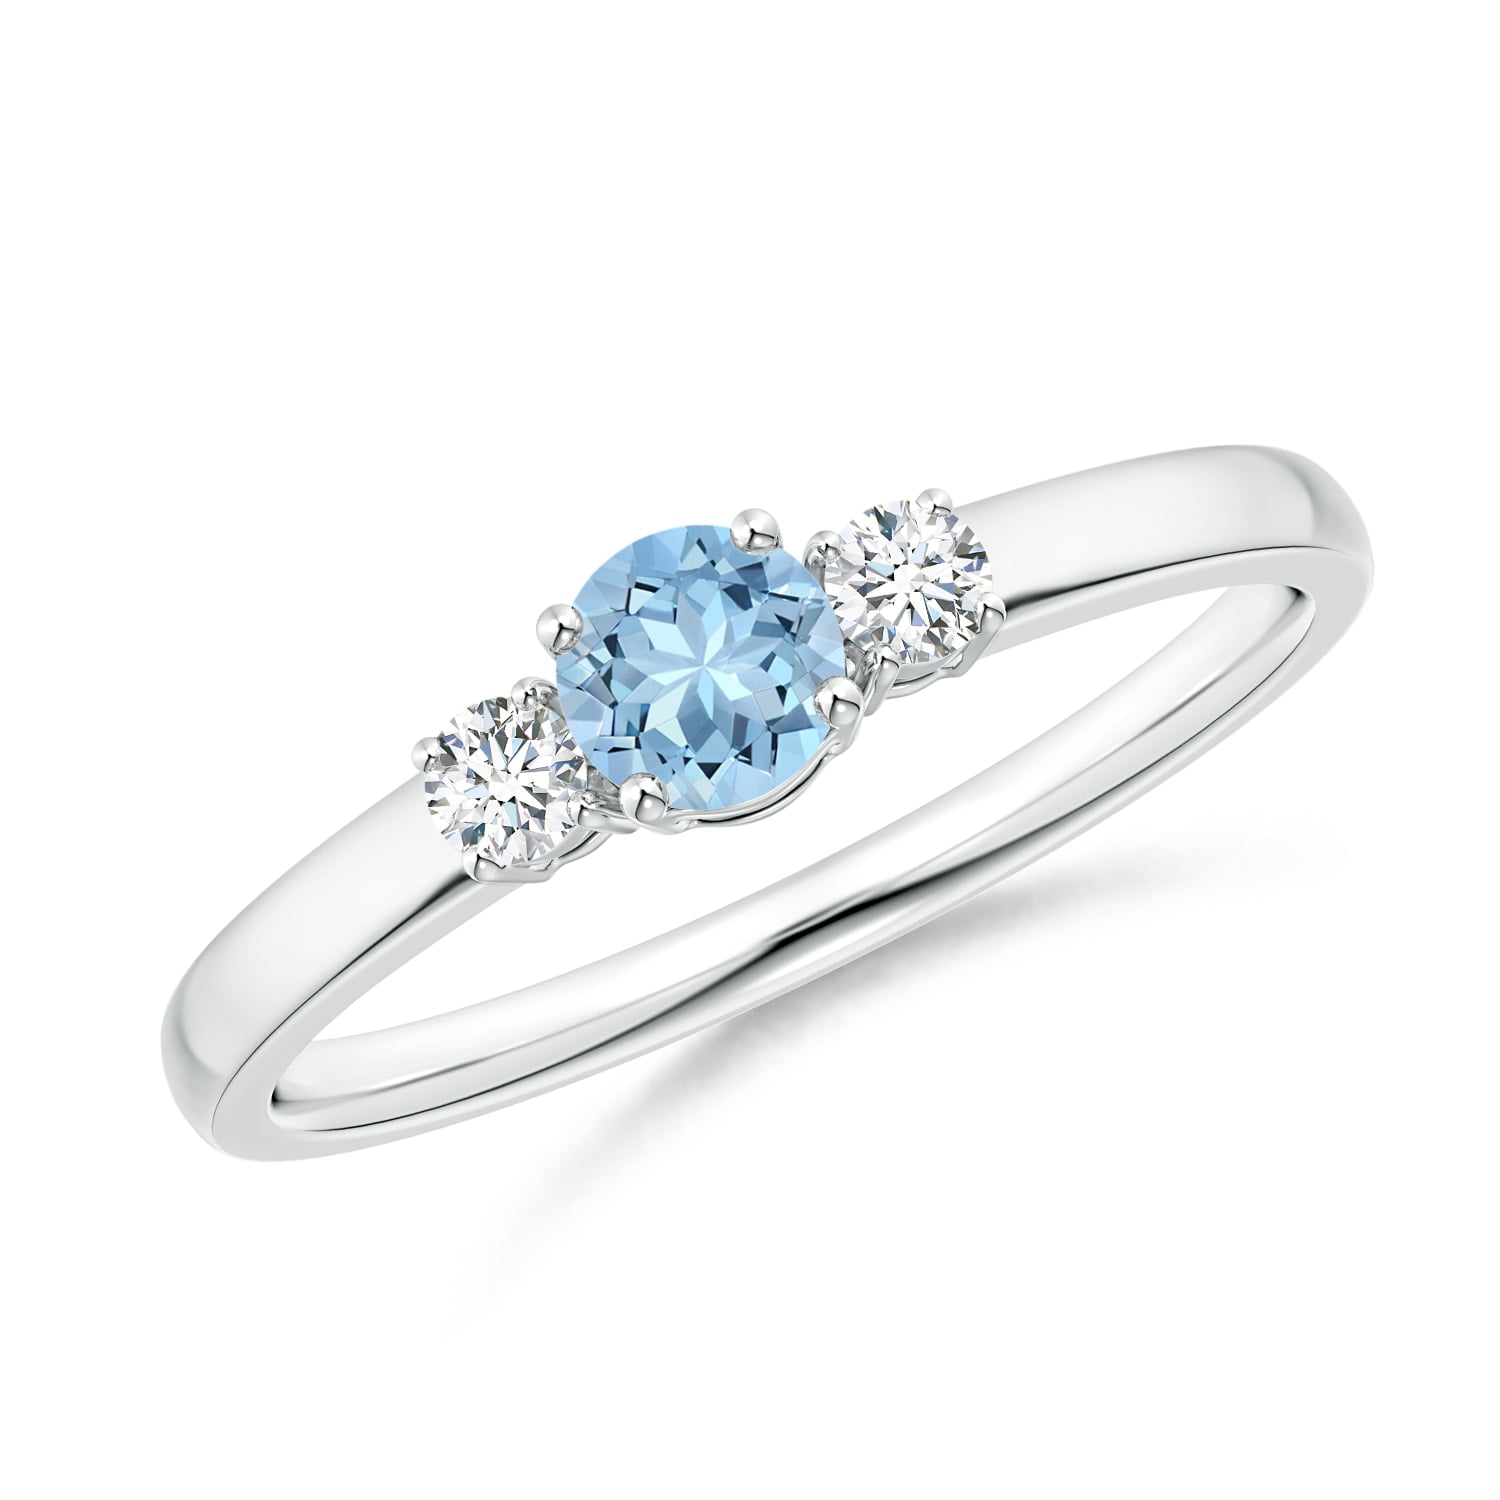 Angara - March Birthstone Ring - Classic Aquamarine and Diamond Three ...